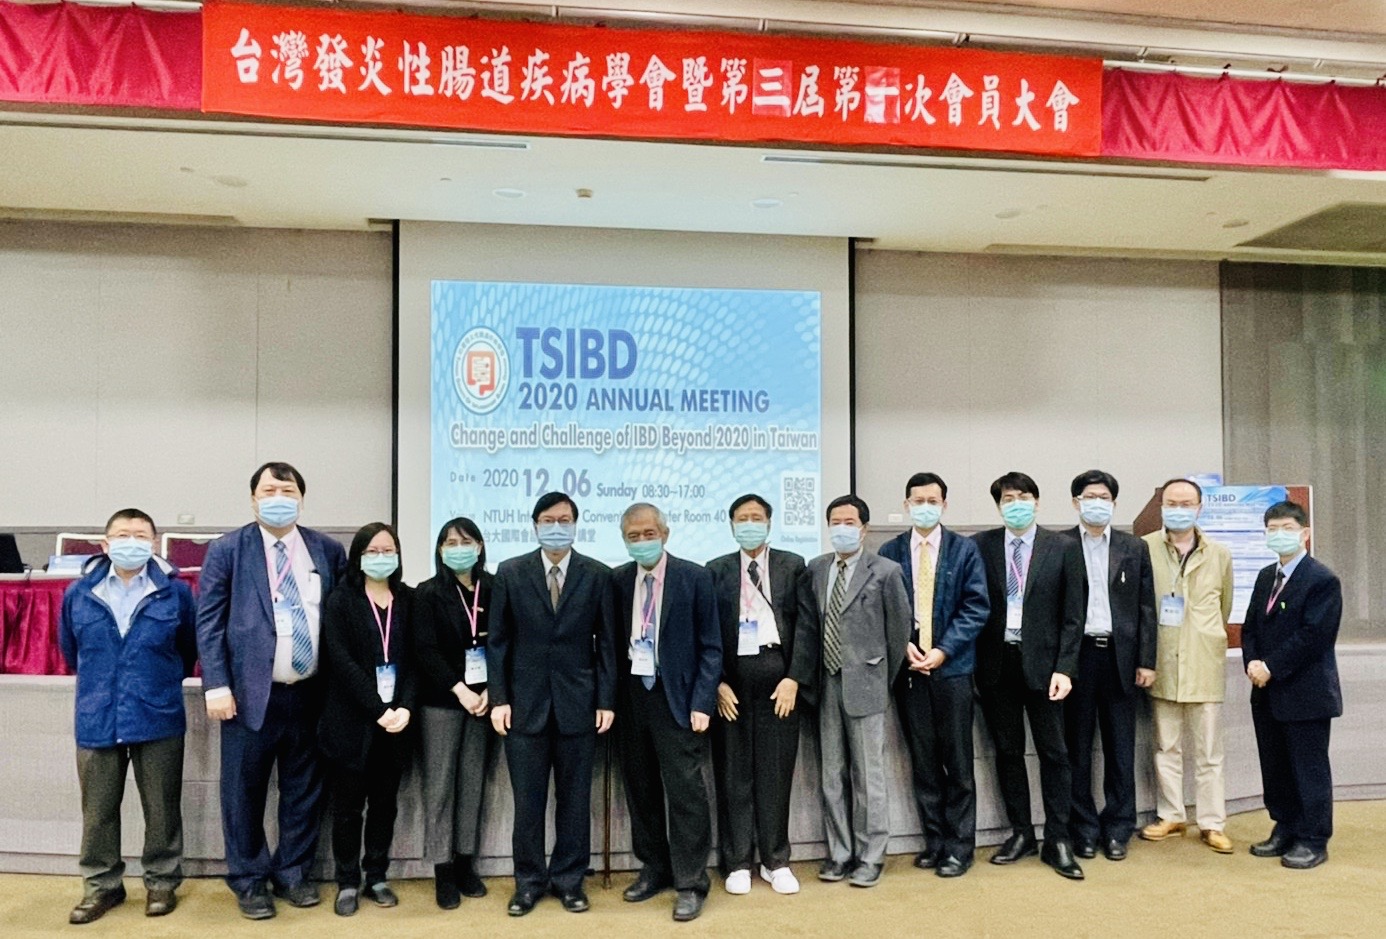 2020 12/6 TSIBD Annual Meeting